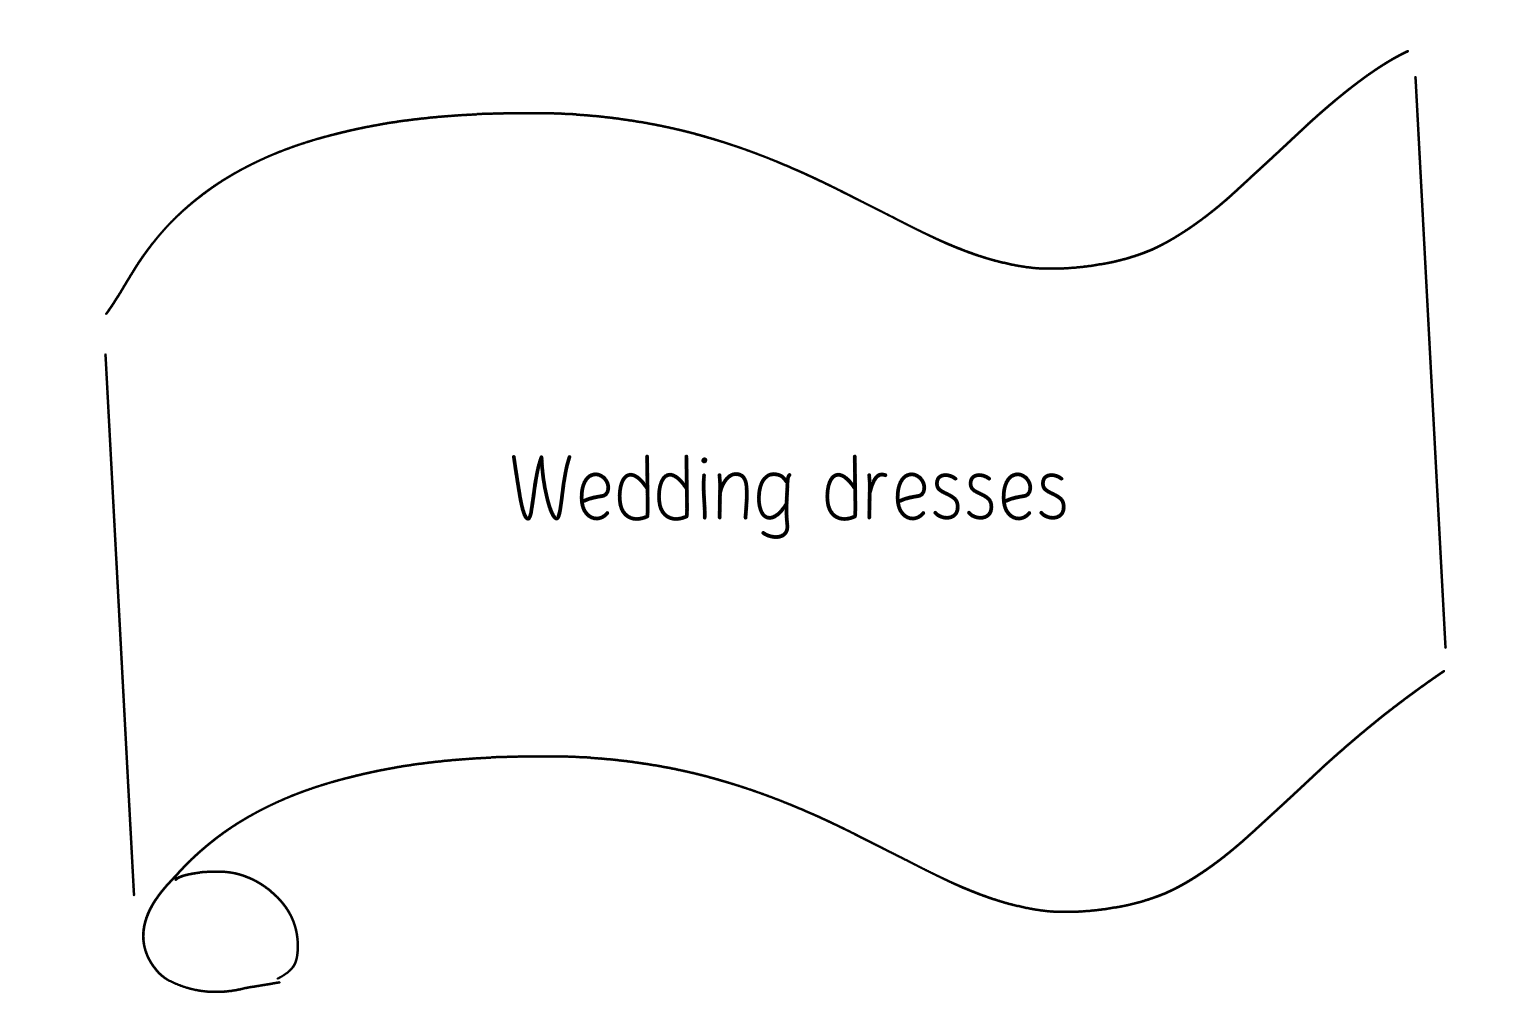 Ilustración de vestidos de novia y tiendas de novias